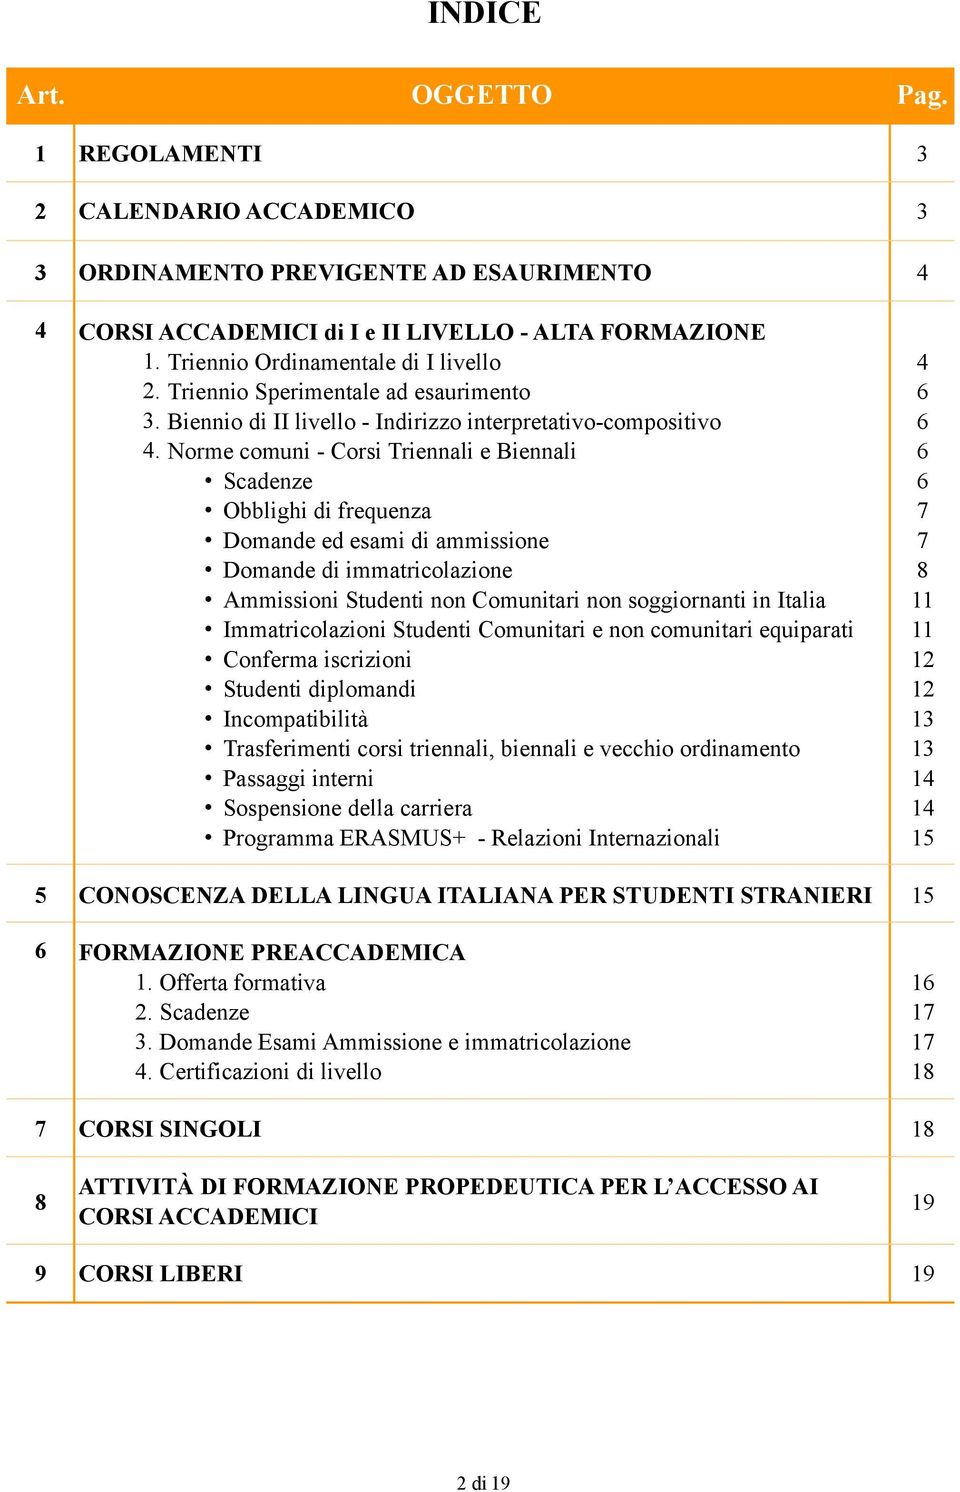 Norme comuni - Corsi Triennali e Biennali Scadenze Obblighi di frequenza Domande ed esami di ammissione Domande di immatricolazione Ammissioni Studenti non Comunitari non soggiornanti in Italia